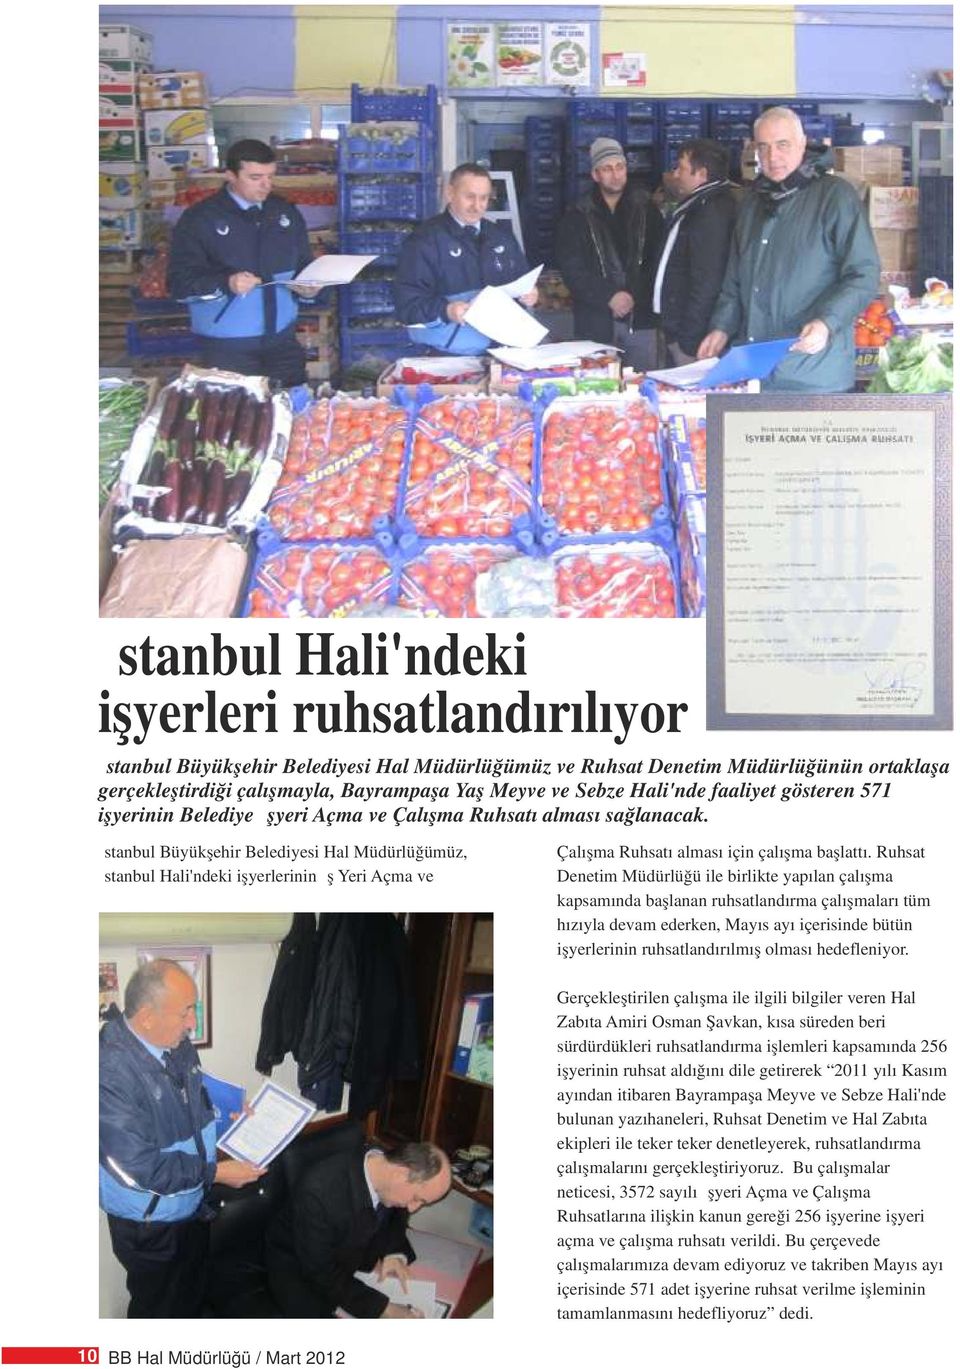 İstanbul Büyükşehir Belediyesi Hal Müdürlüğümüz, İstanbul Hali'ndeki işyerlerinin İş Yeri Açma ve Çalışma Ruhsatı alması için çalışma başlattı.